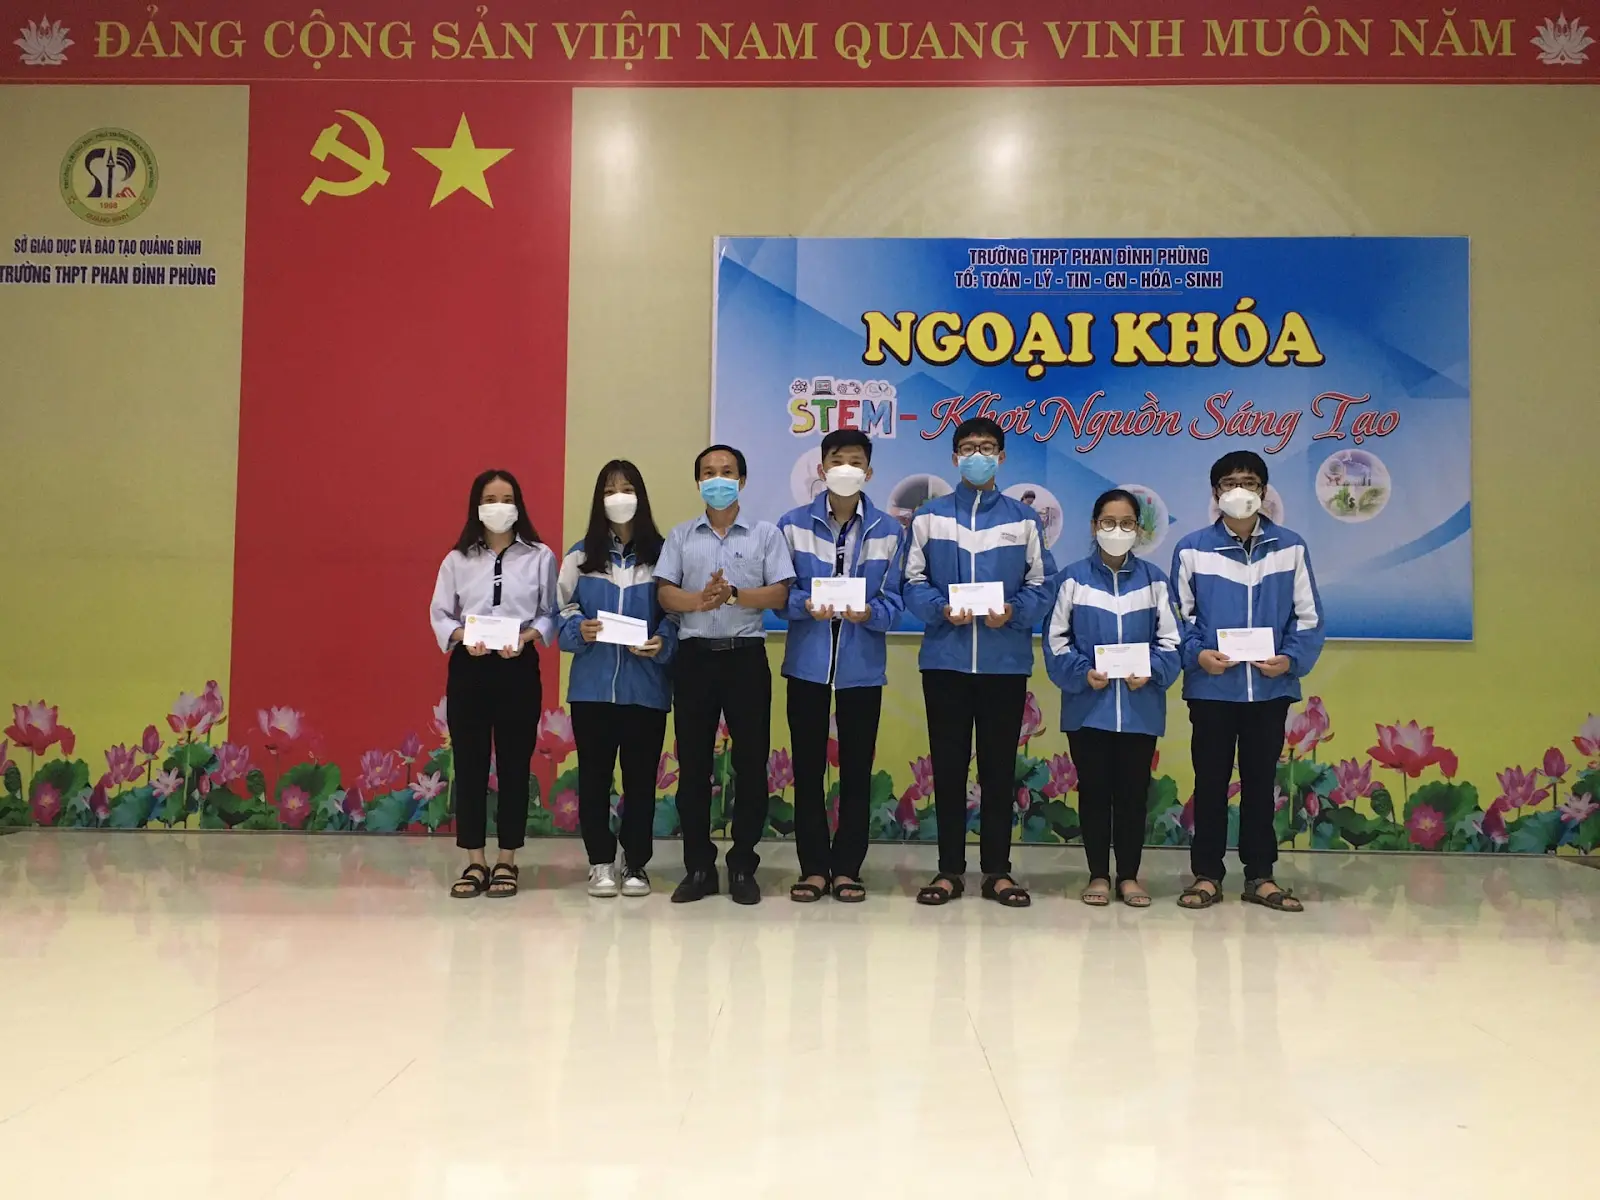 Đánh Giá Trường THPT Phan Đình Phùng - Quảng Bình Có Tốt Không